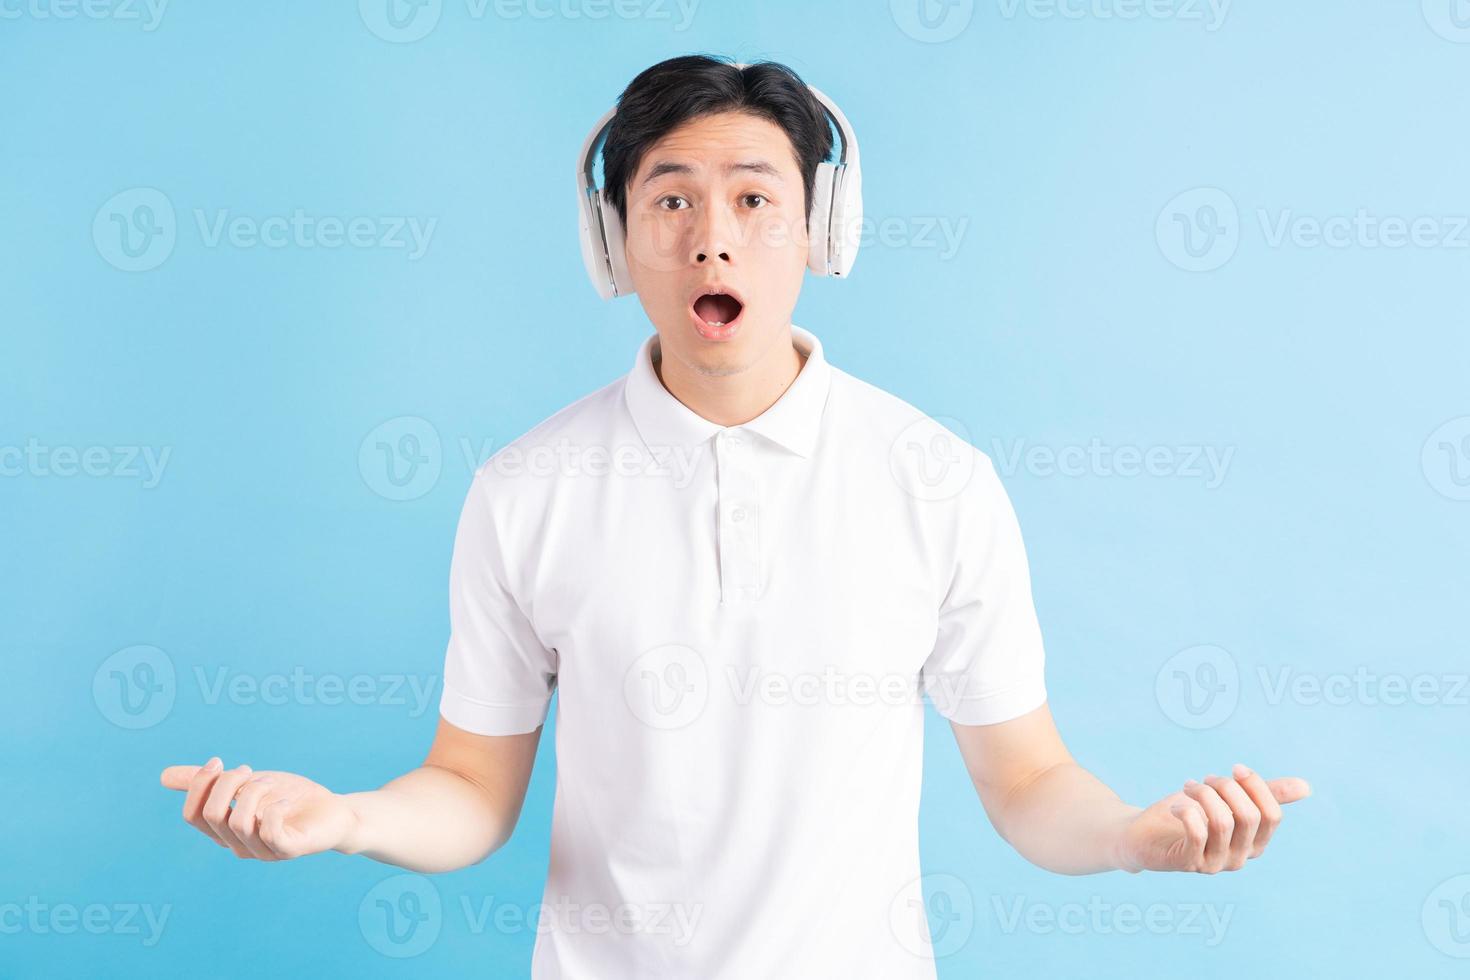 ett foto av en stilig asiatisk man med ett förvånat uttryck som lyssnar på musik